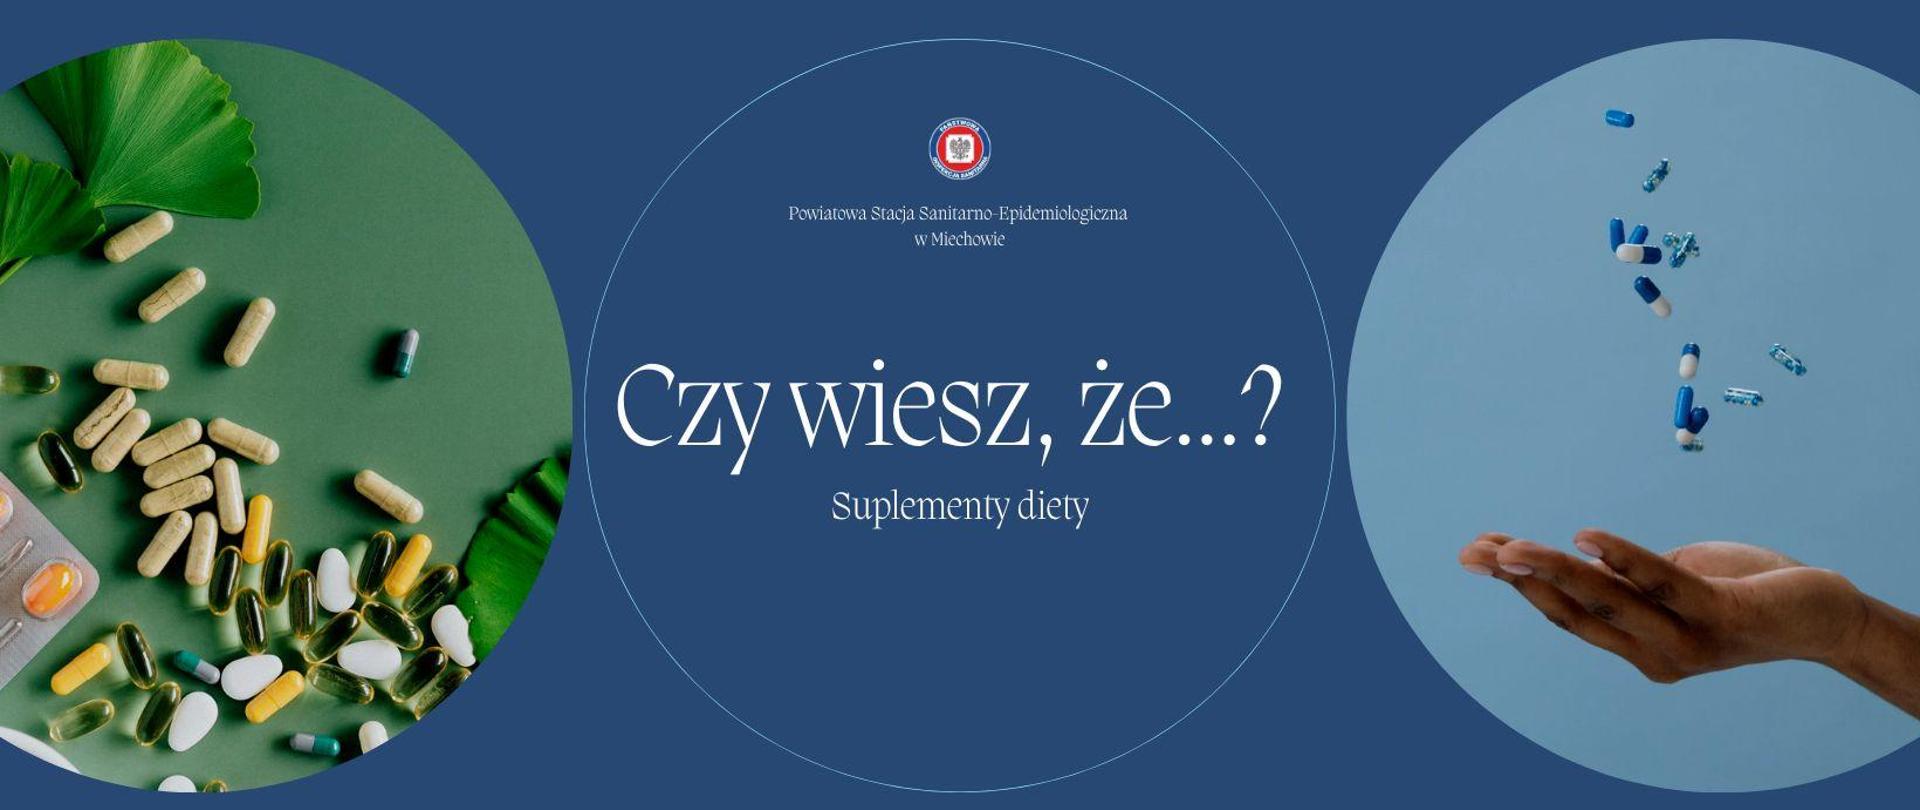 Na niebieskim tle z dwoma zdjęciami przedstawiającymi tabletki (suplementy diety) napis Czy wiesz, że...? Suplementy diety